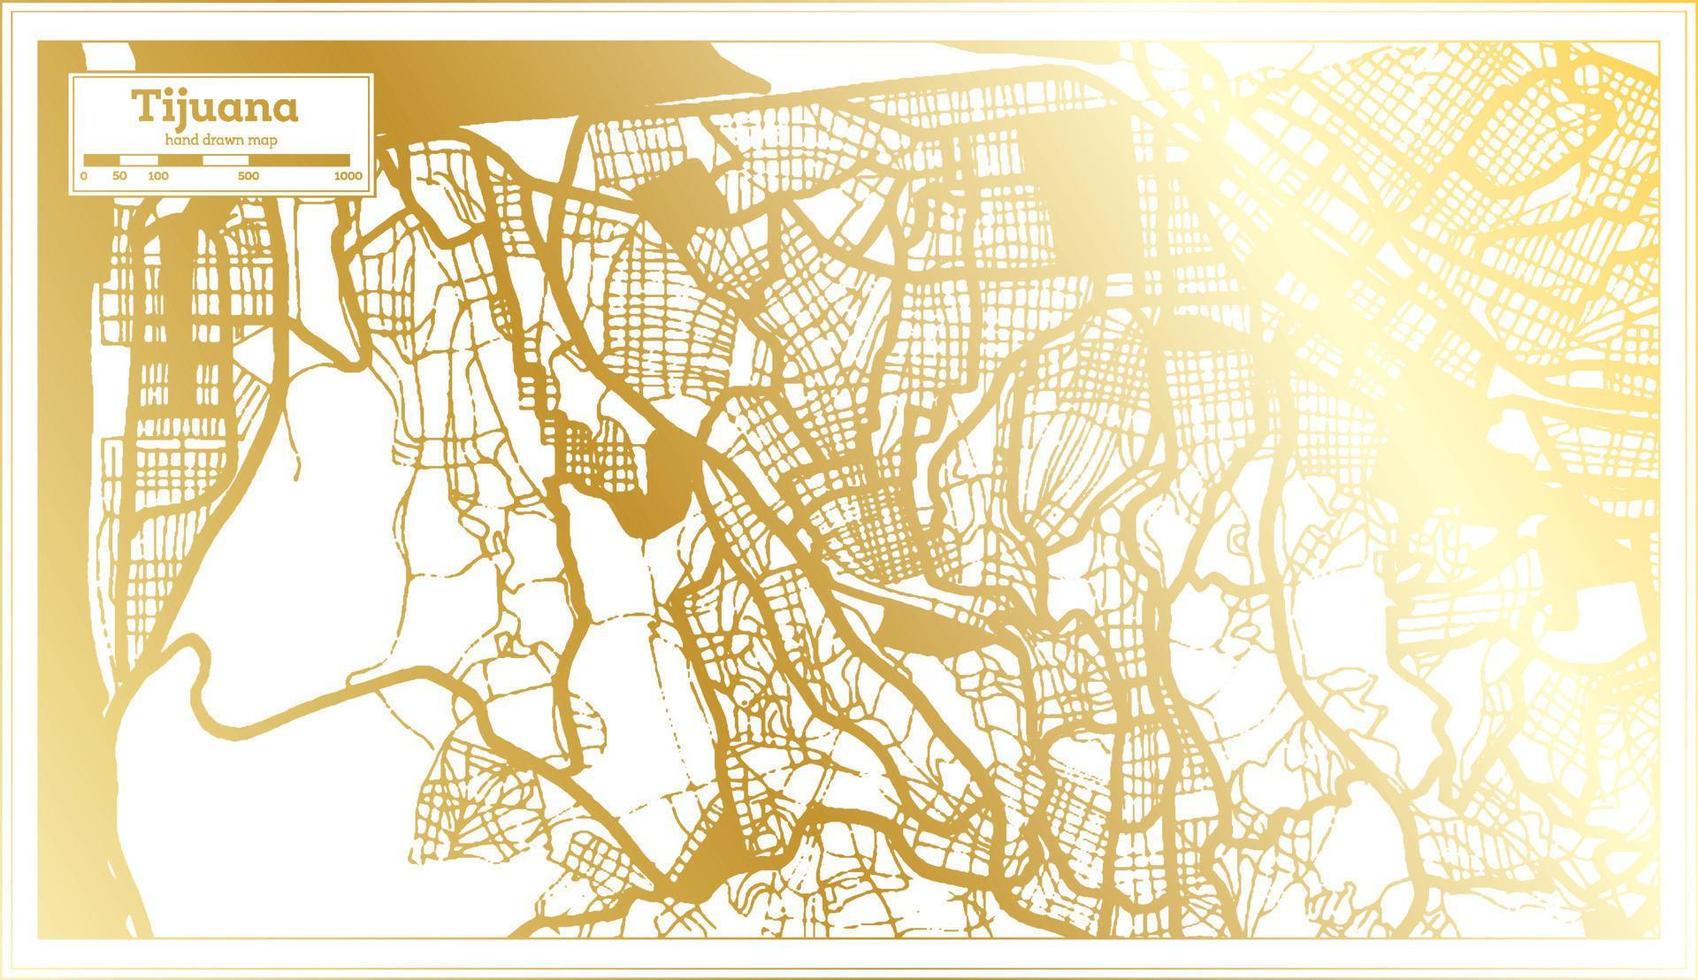 mapa da cidade do méxico tijuana em estilo retrô na cor dourada. mapa de contorno. vetor